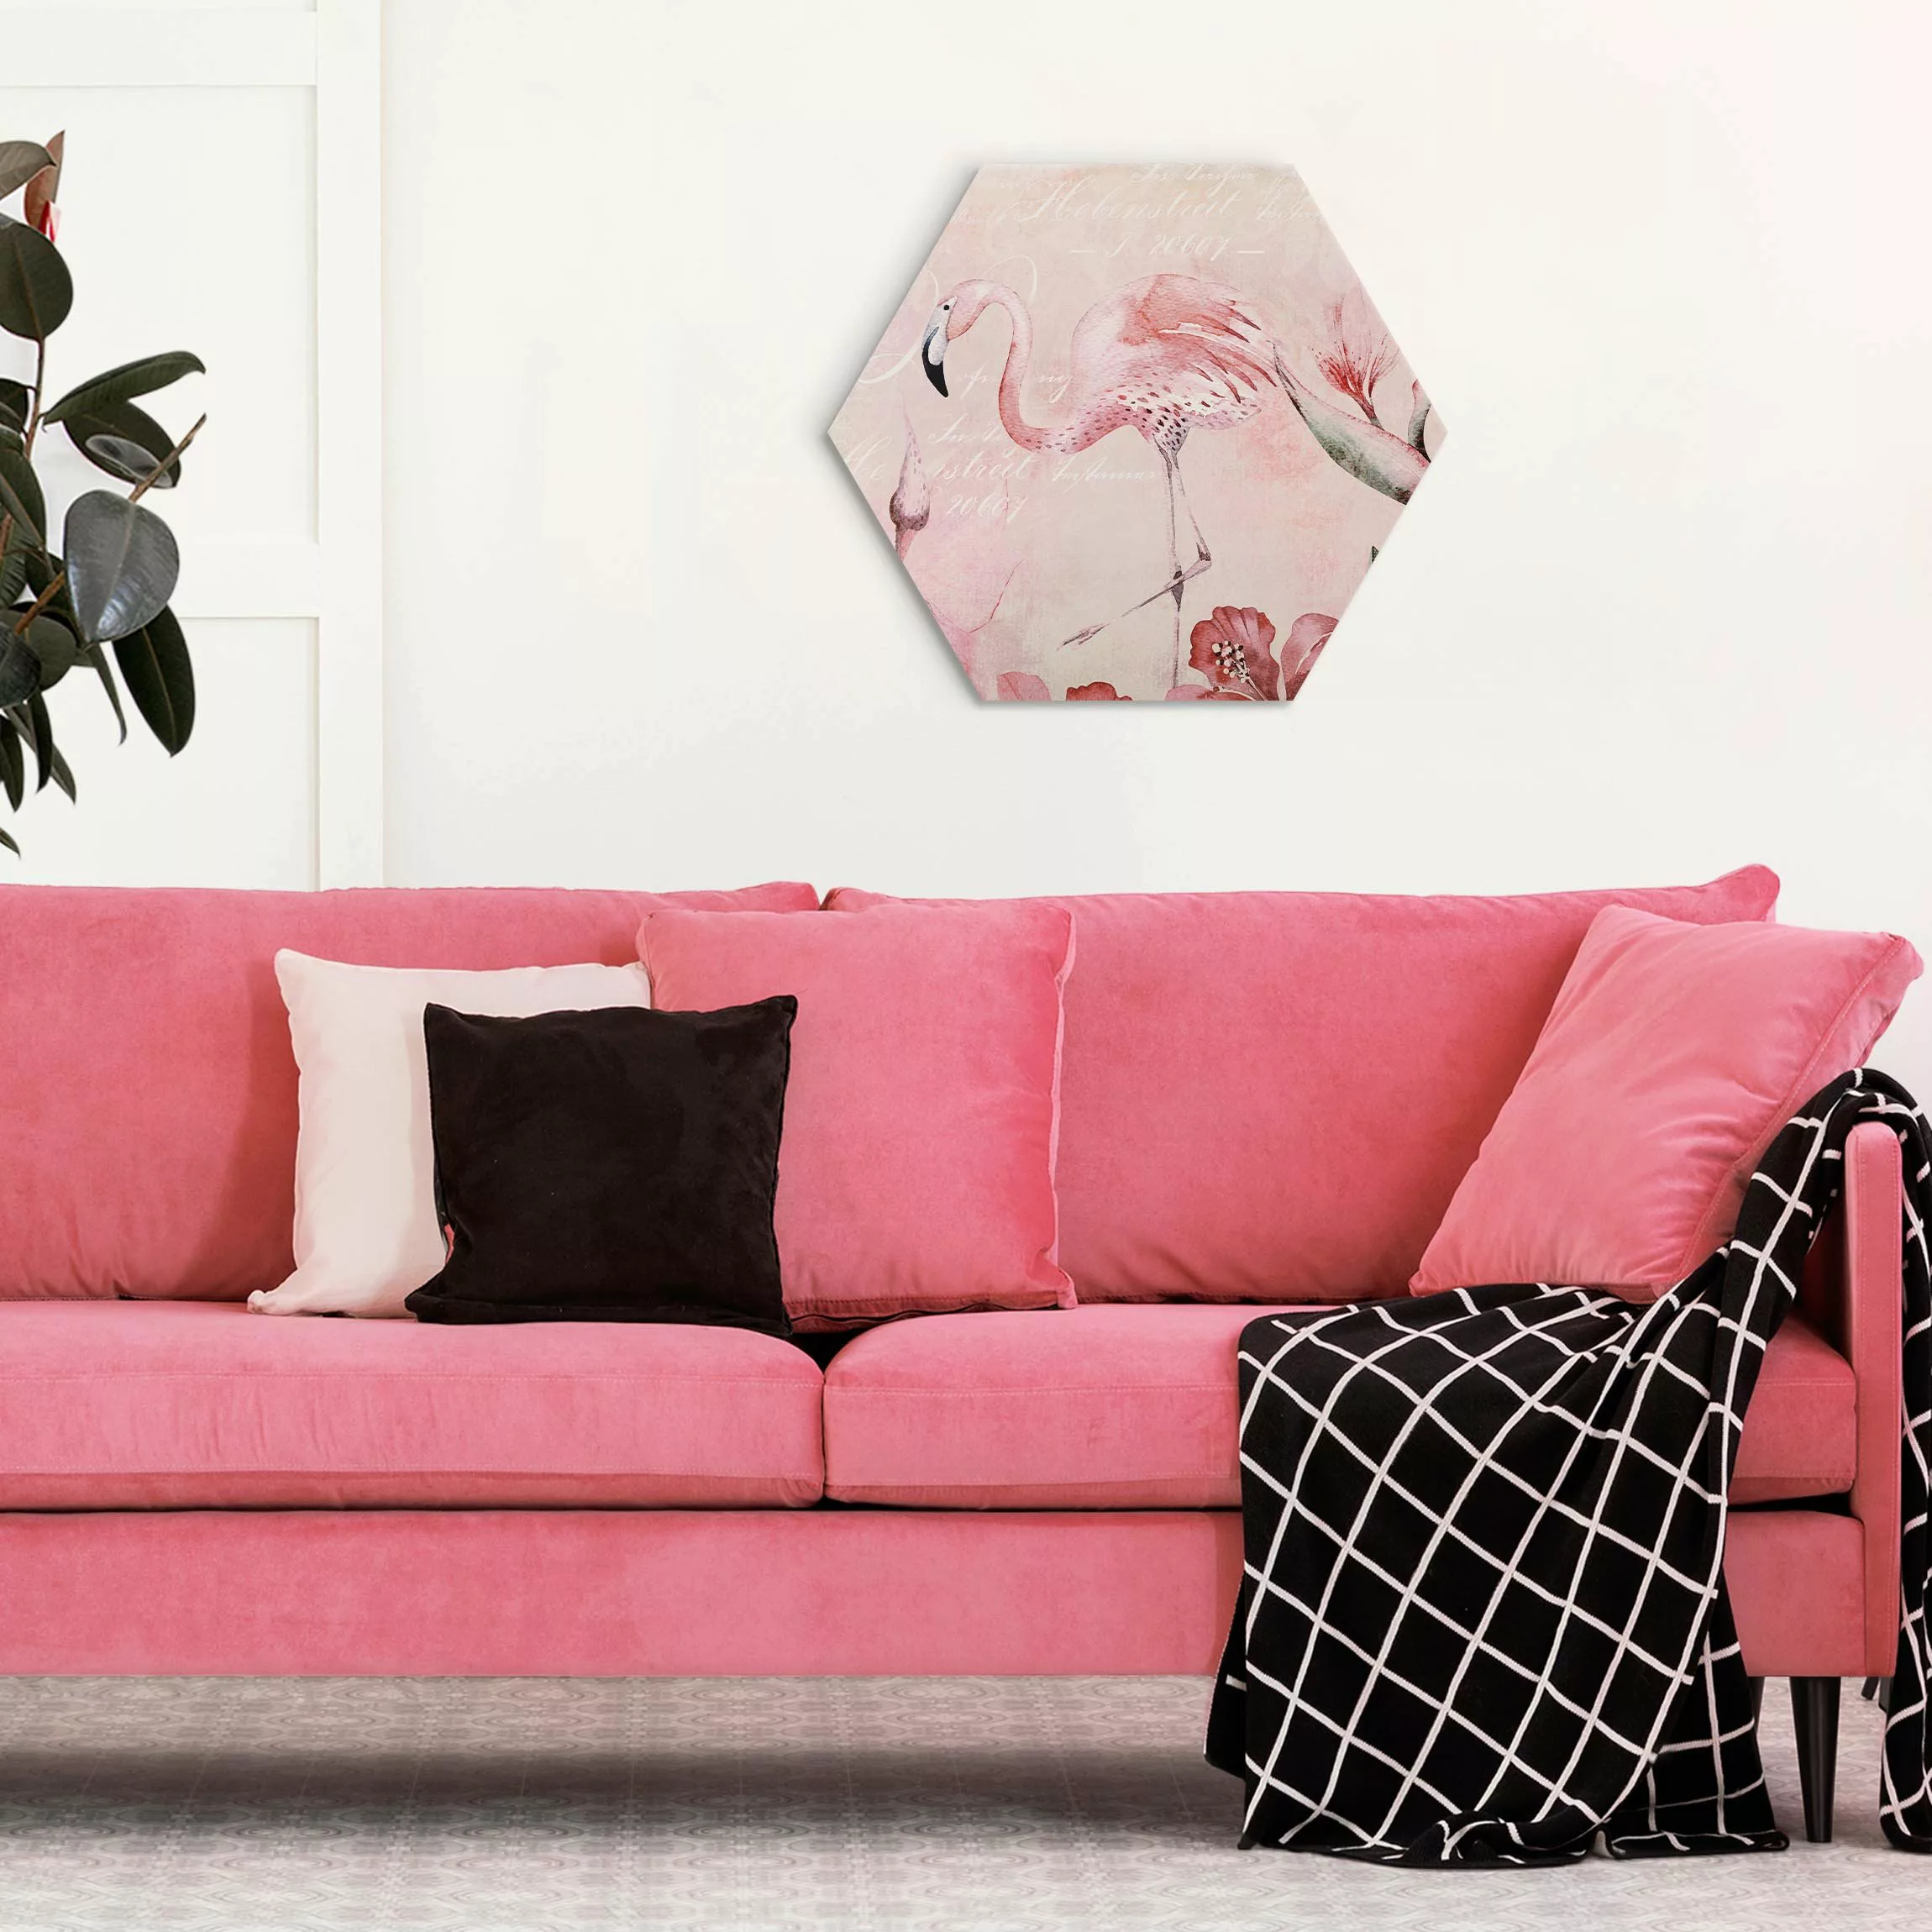 Hexagon-Alu-Dibond Bild Shabby Chic Collage - Flamingo günstig online kaufen